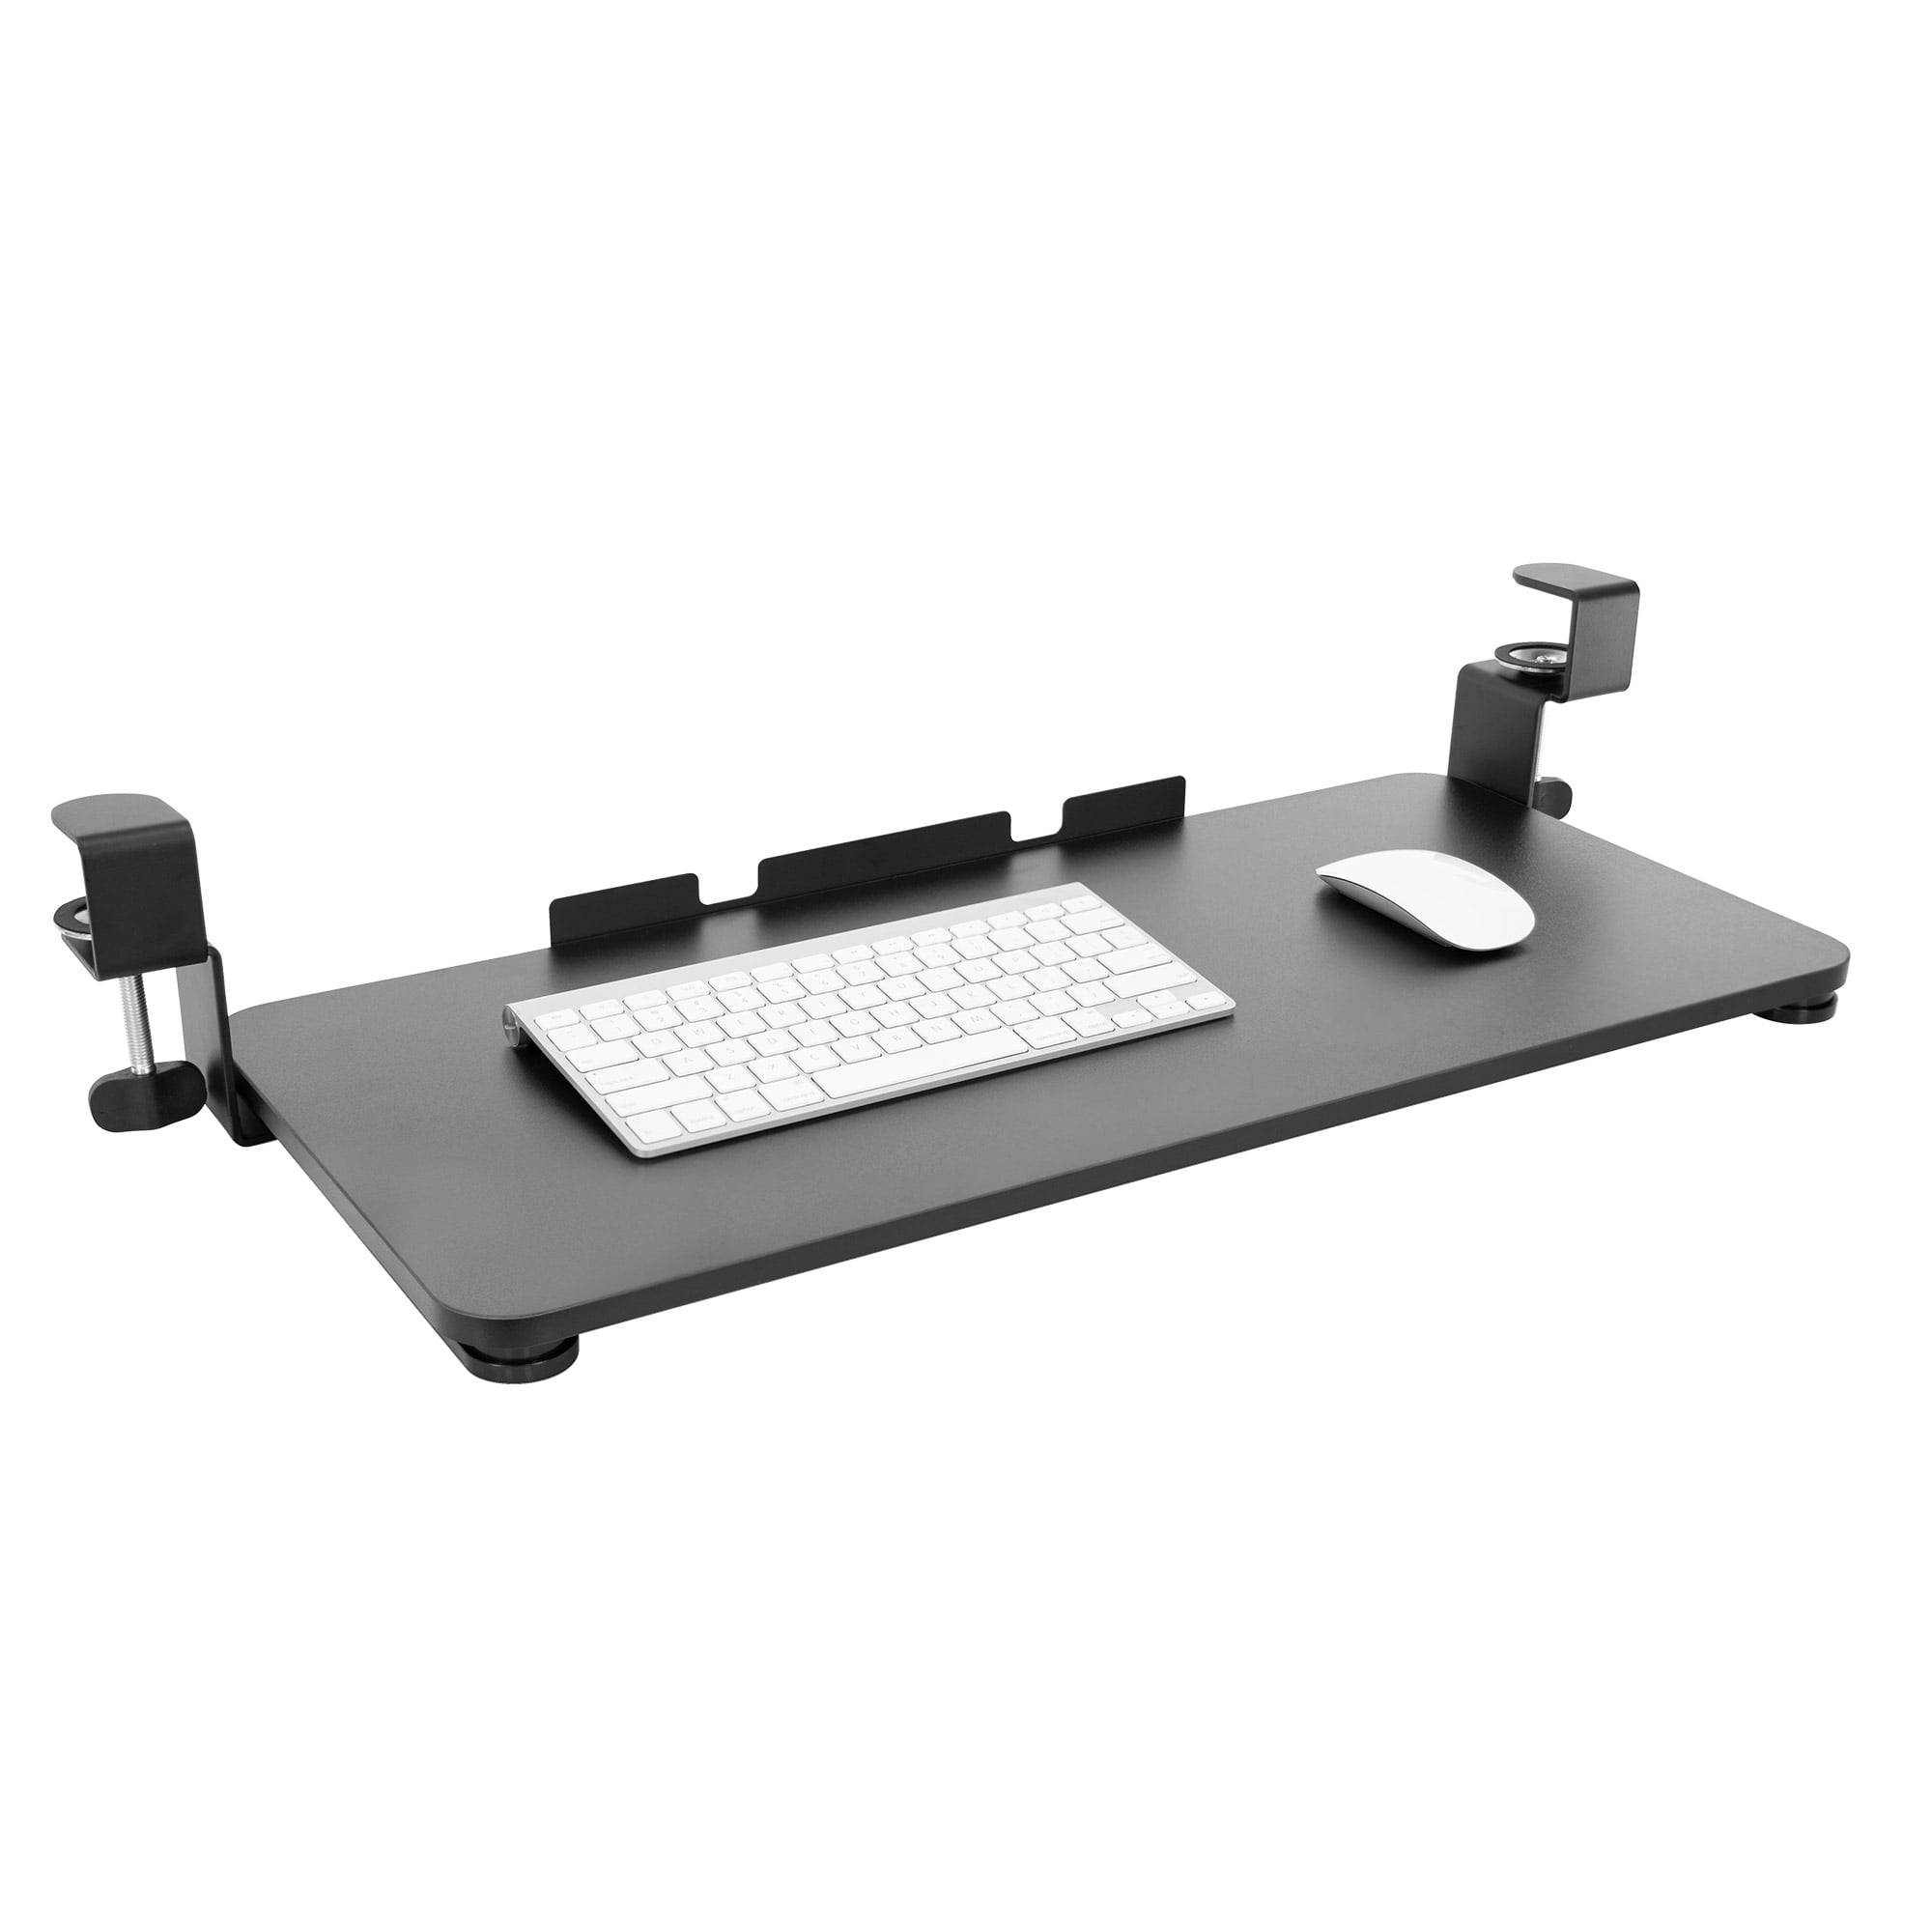 3M Knob Adjust Keyboard Tray With Highly Adjustable Platform for sale online 